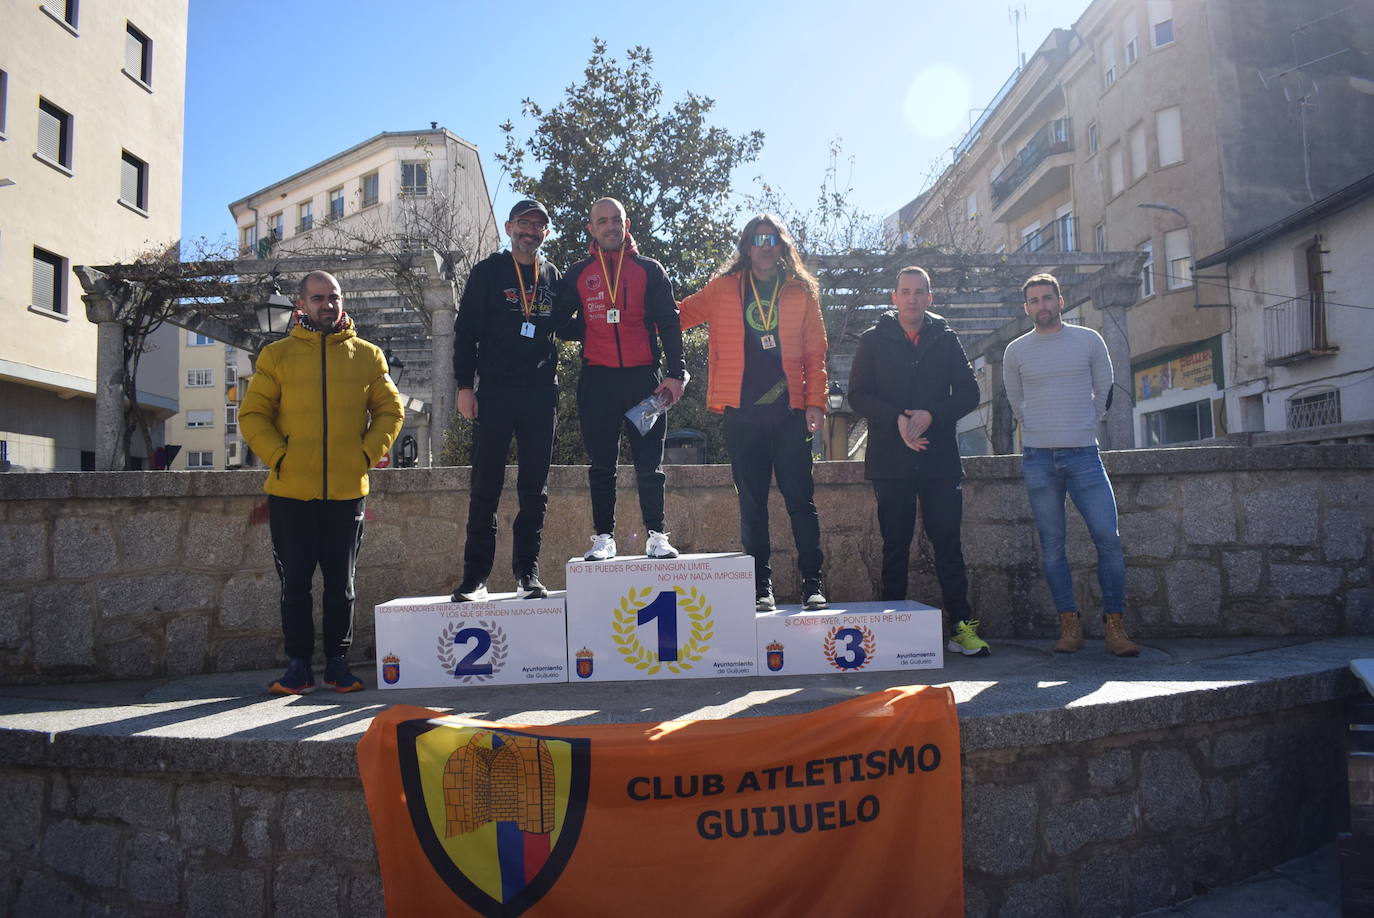 Fotos: Javier Alves y Gema Martín ganan la Media Maratón de Guijuelo